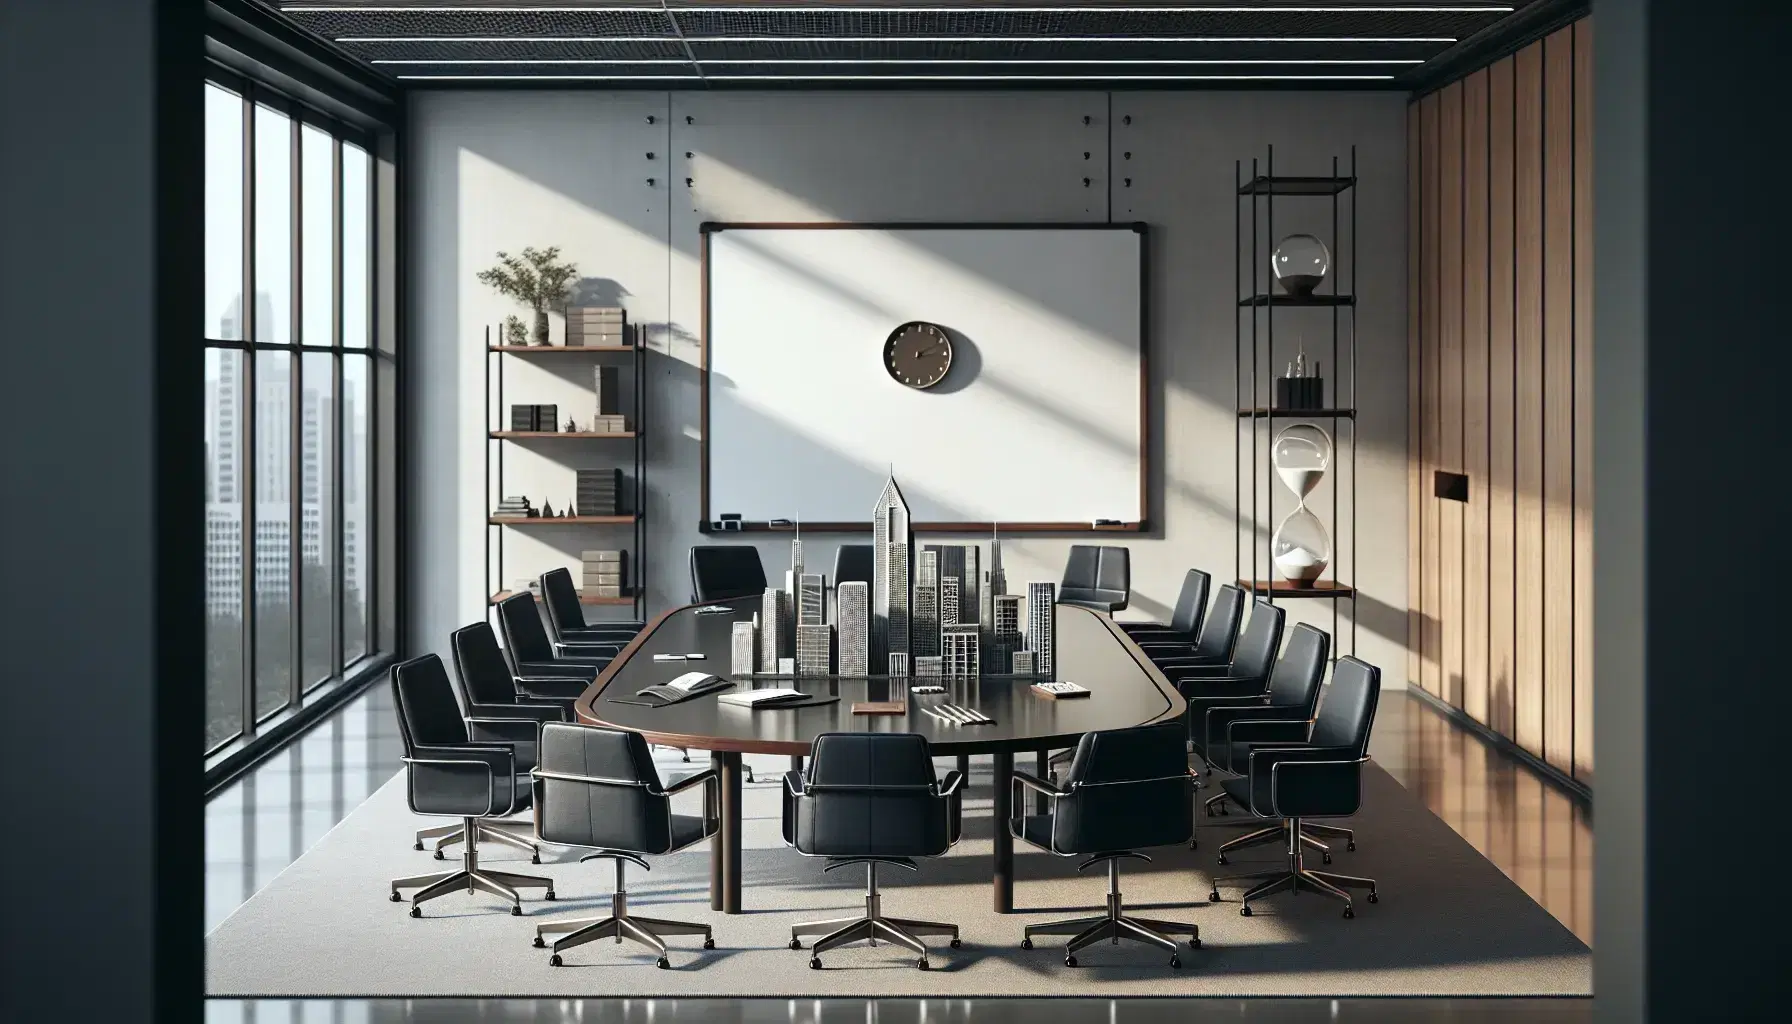 Sala de reuniones espaciosa con mesa ovalada de madera, sillas de cuero negro, pizarra blanca, maqueta urbana gris y reloj de arena en estante metálico, planta interior y luz natural.